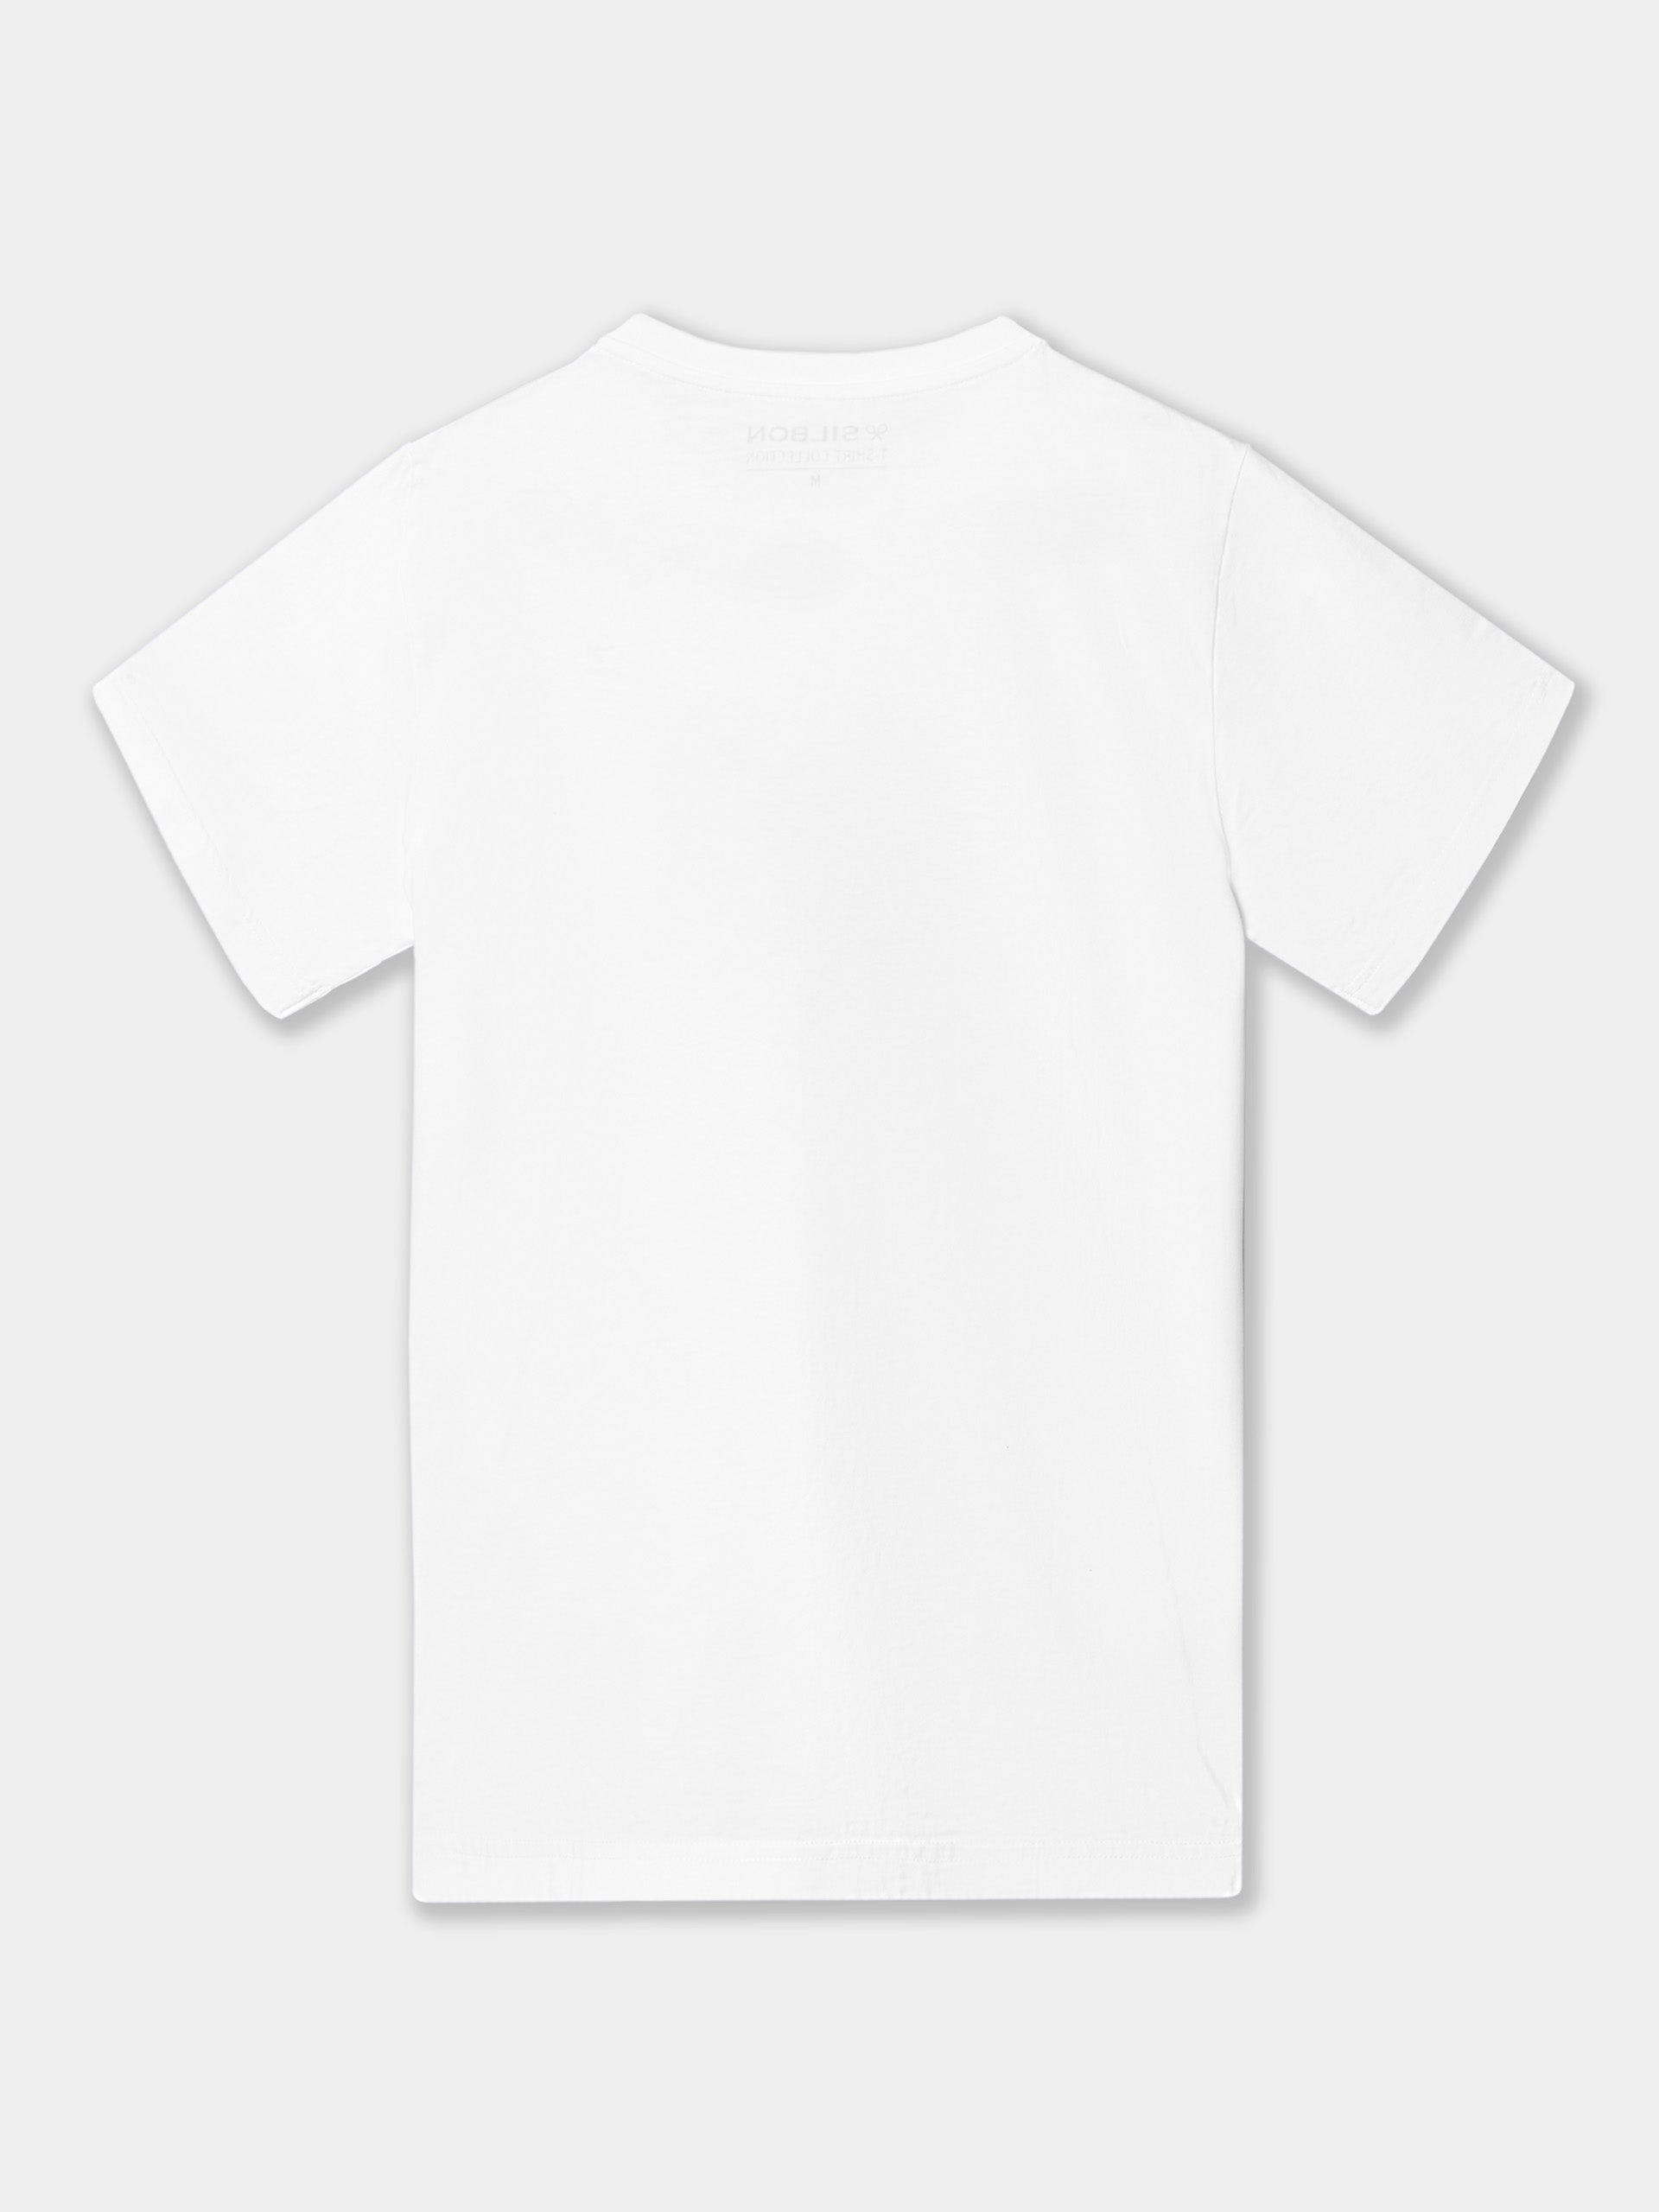 Camiseta raqueta bordada blanca